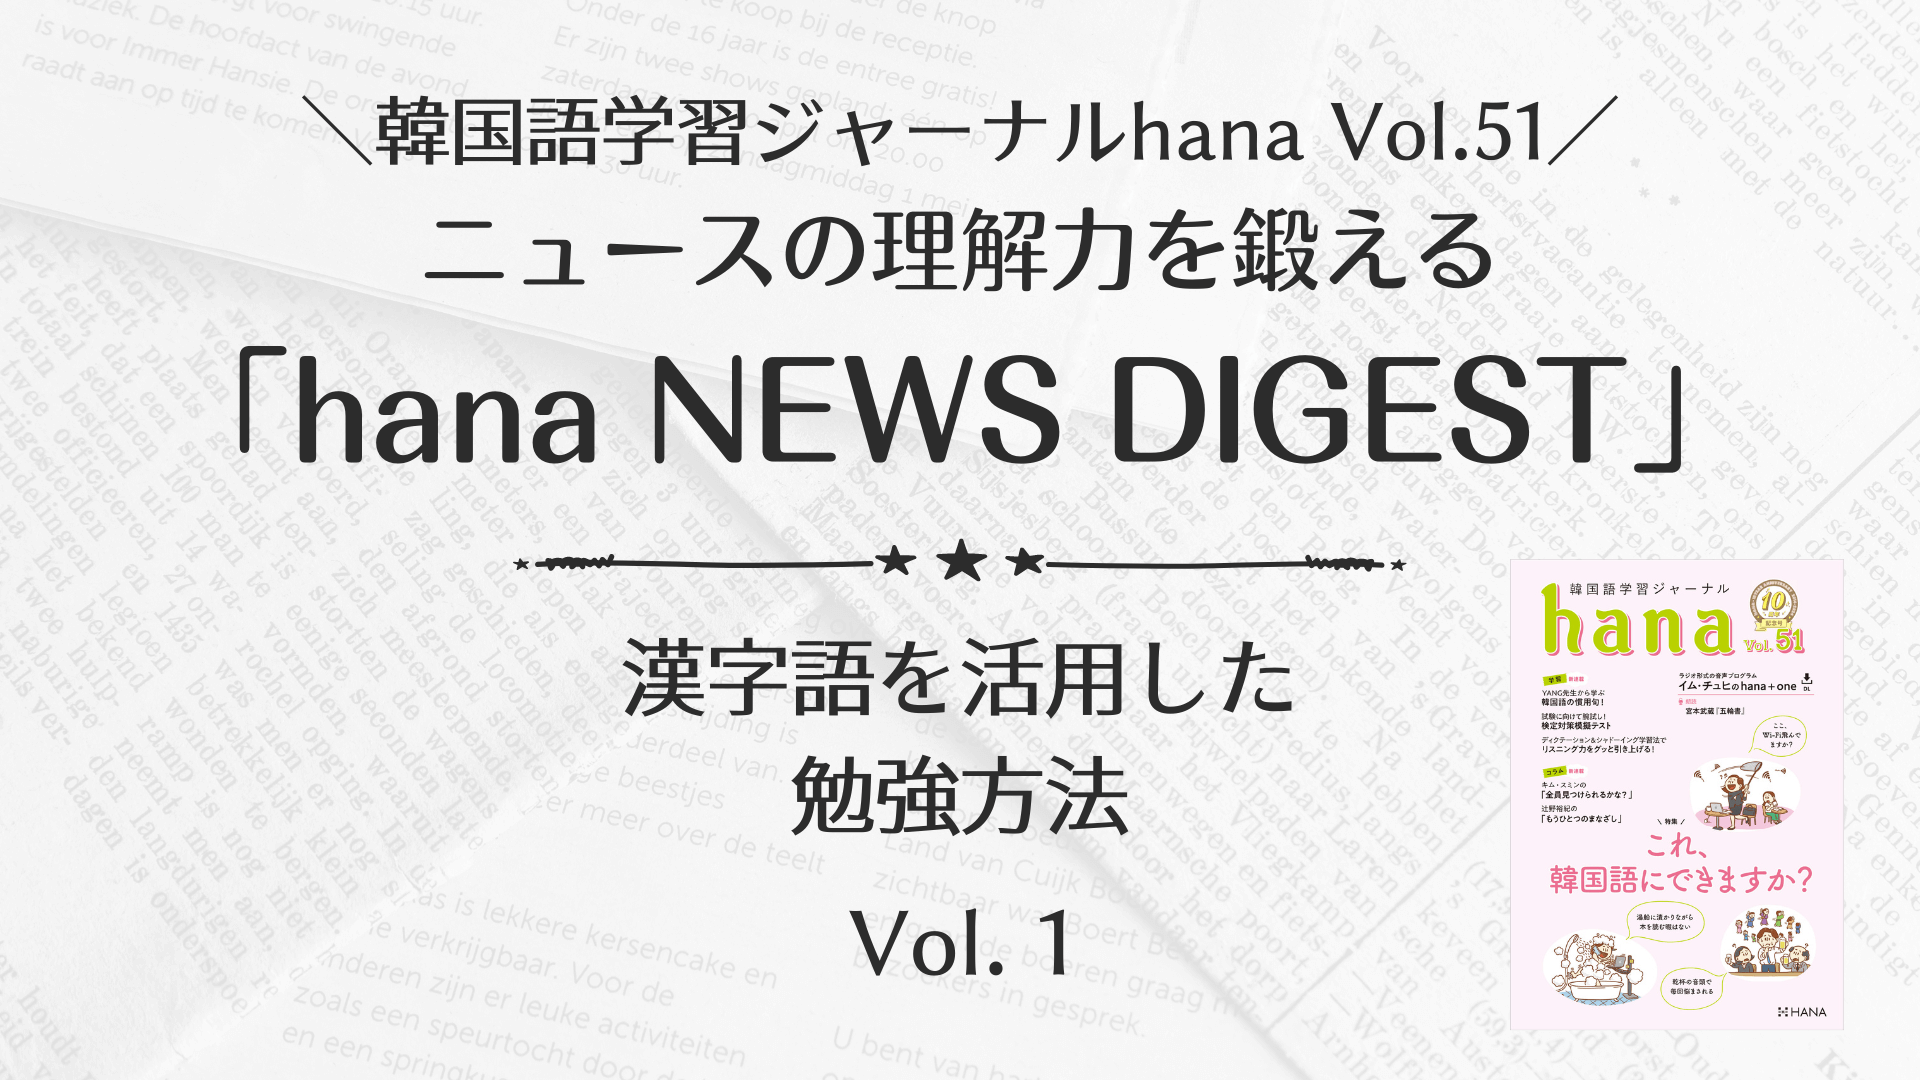 韓国ニュース「hana NEWS DIGEST」の漢字語を活用した勉強方法 Vol. 1